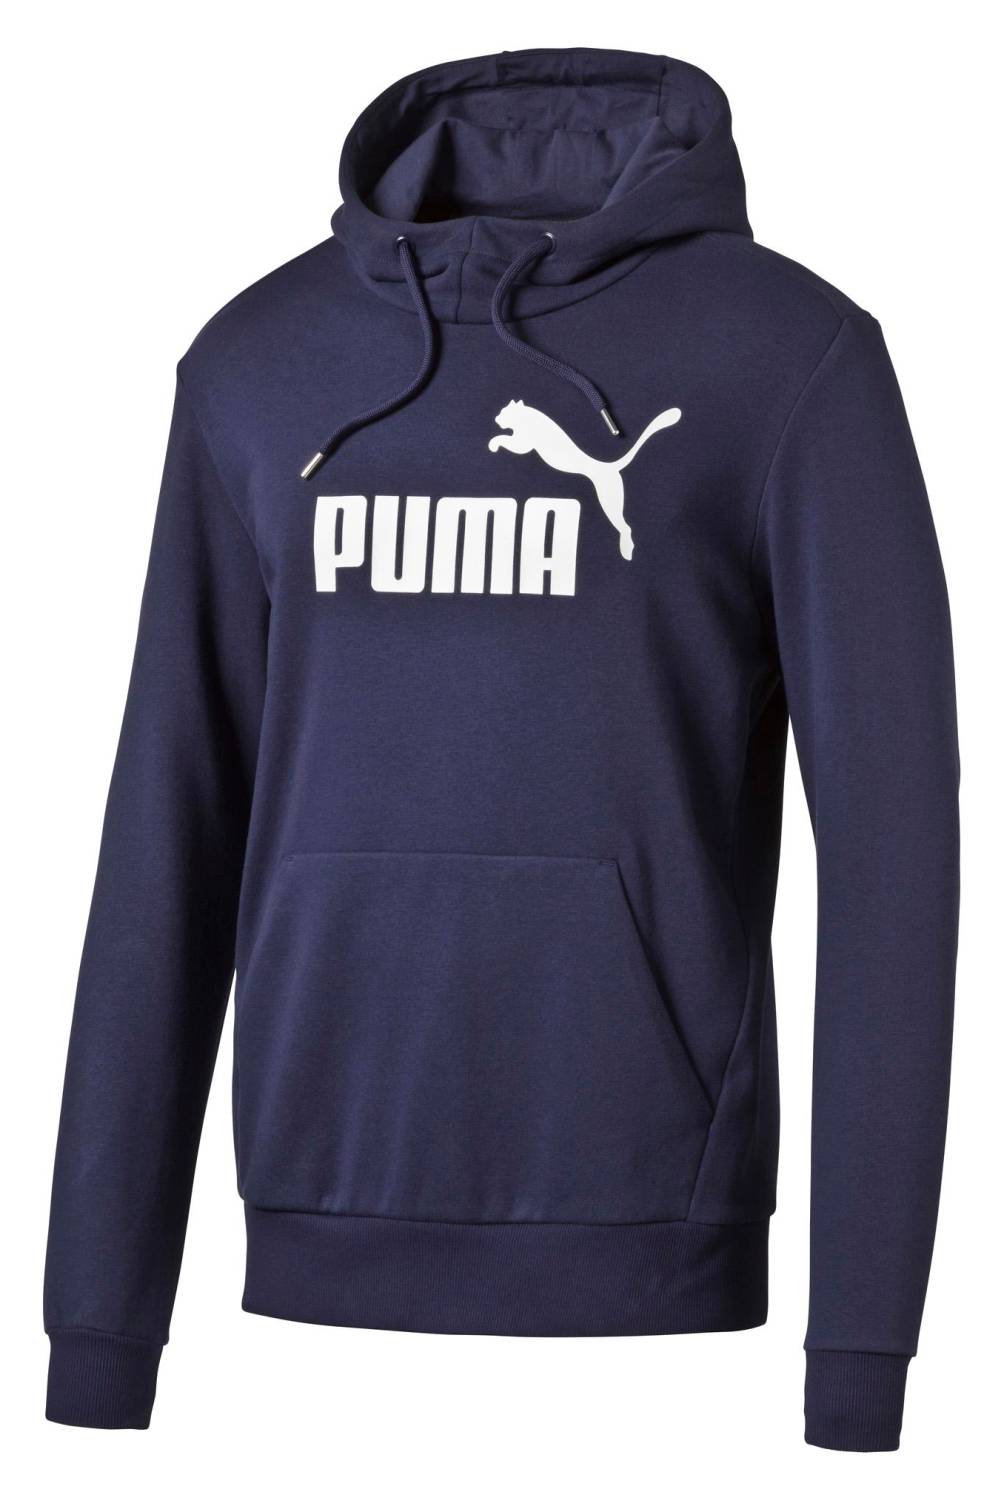 PUMA - Puma Hoodie Hombre